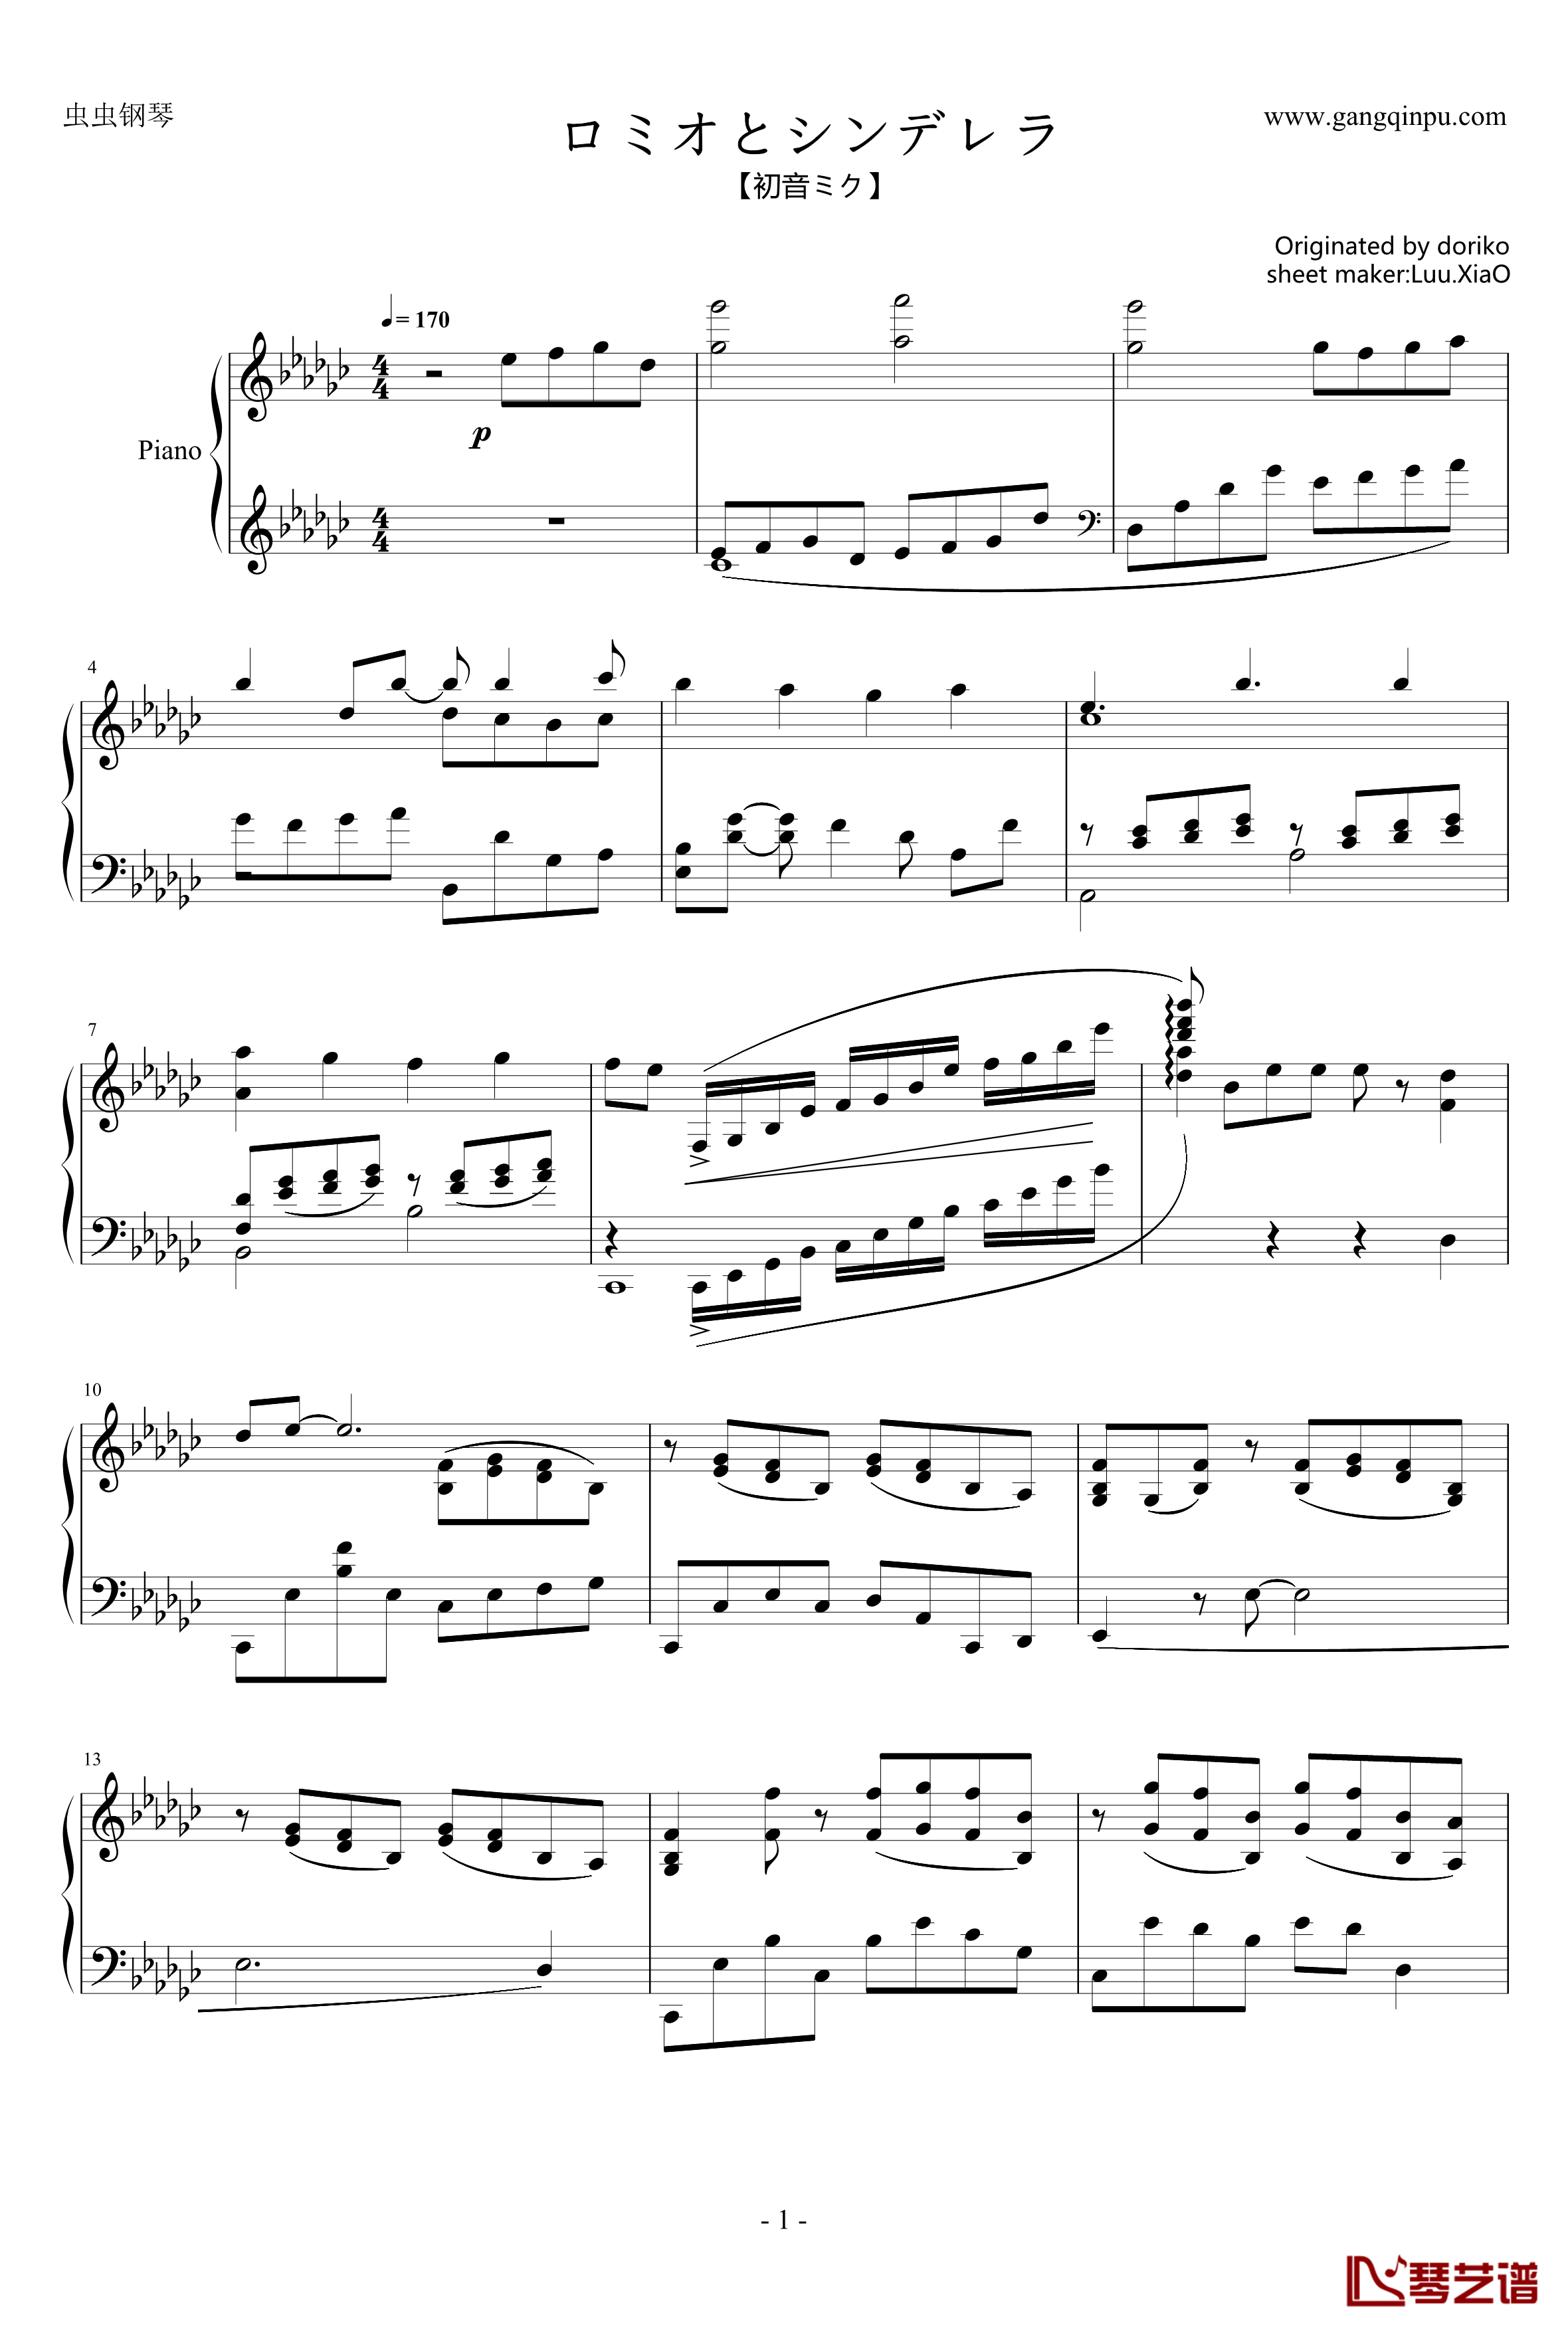 罗密欧与辛德瑞拉钢琴谱-初音ミク-doriko1